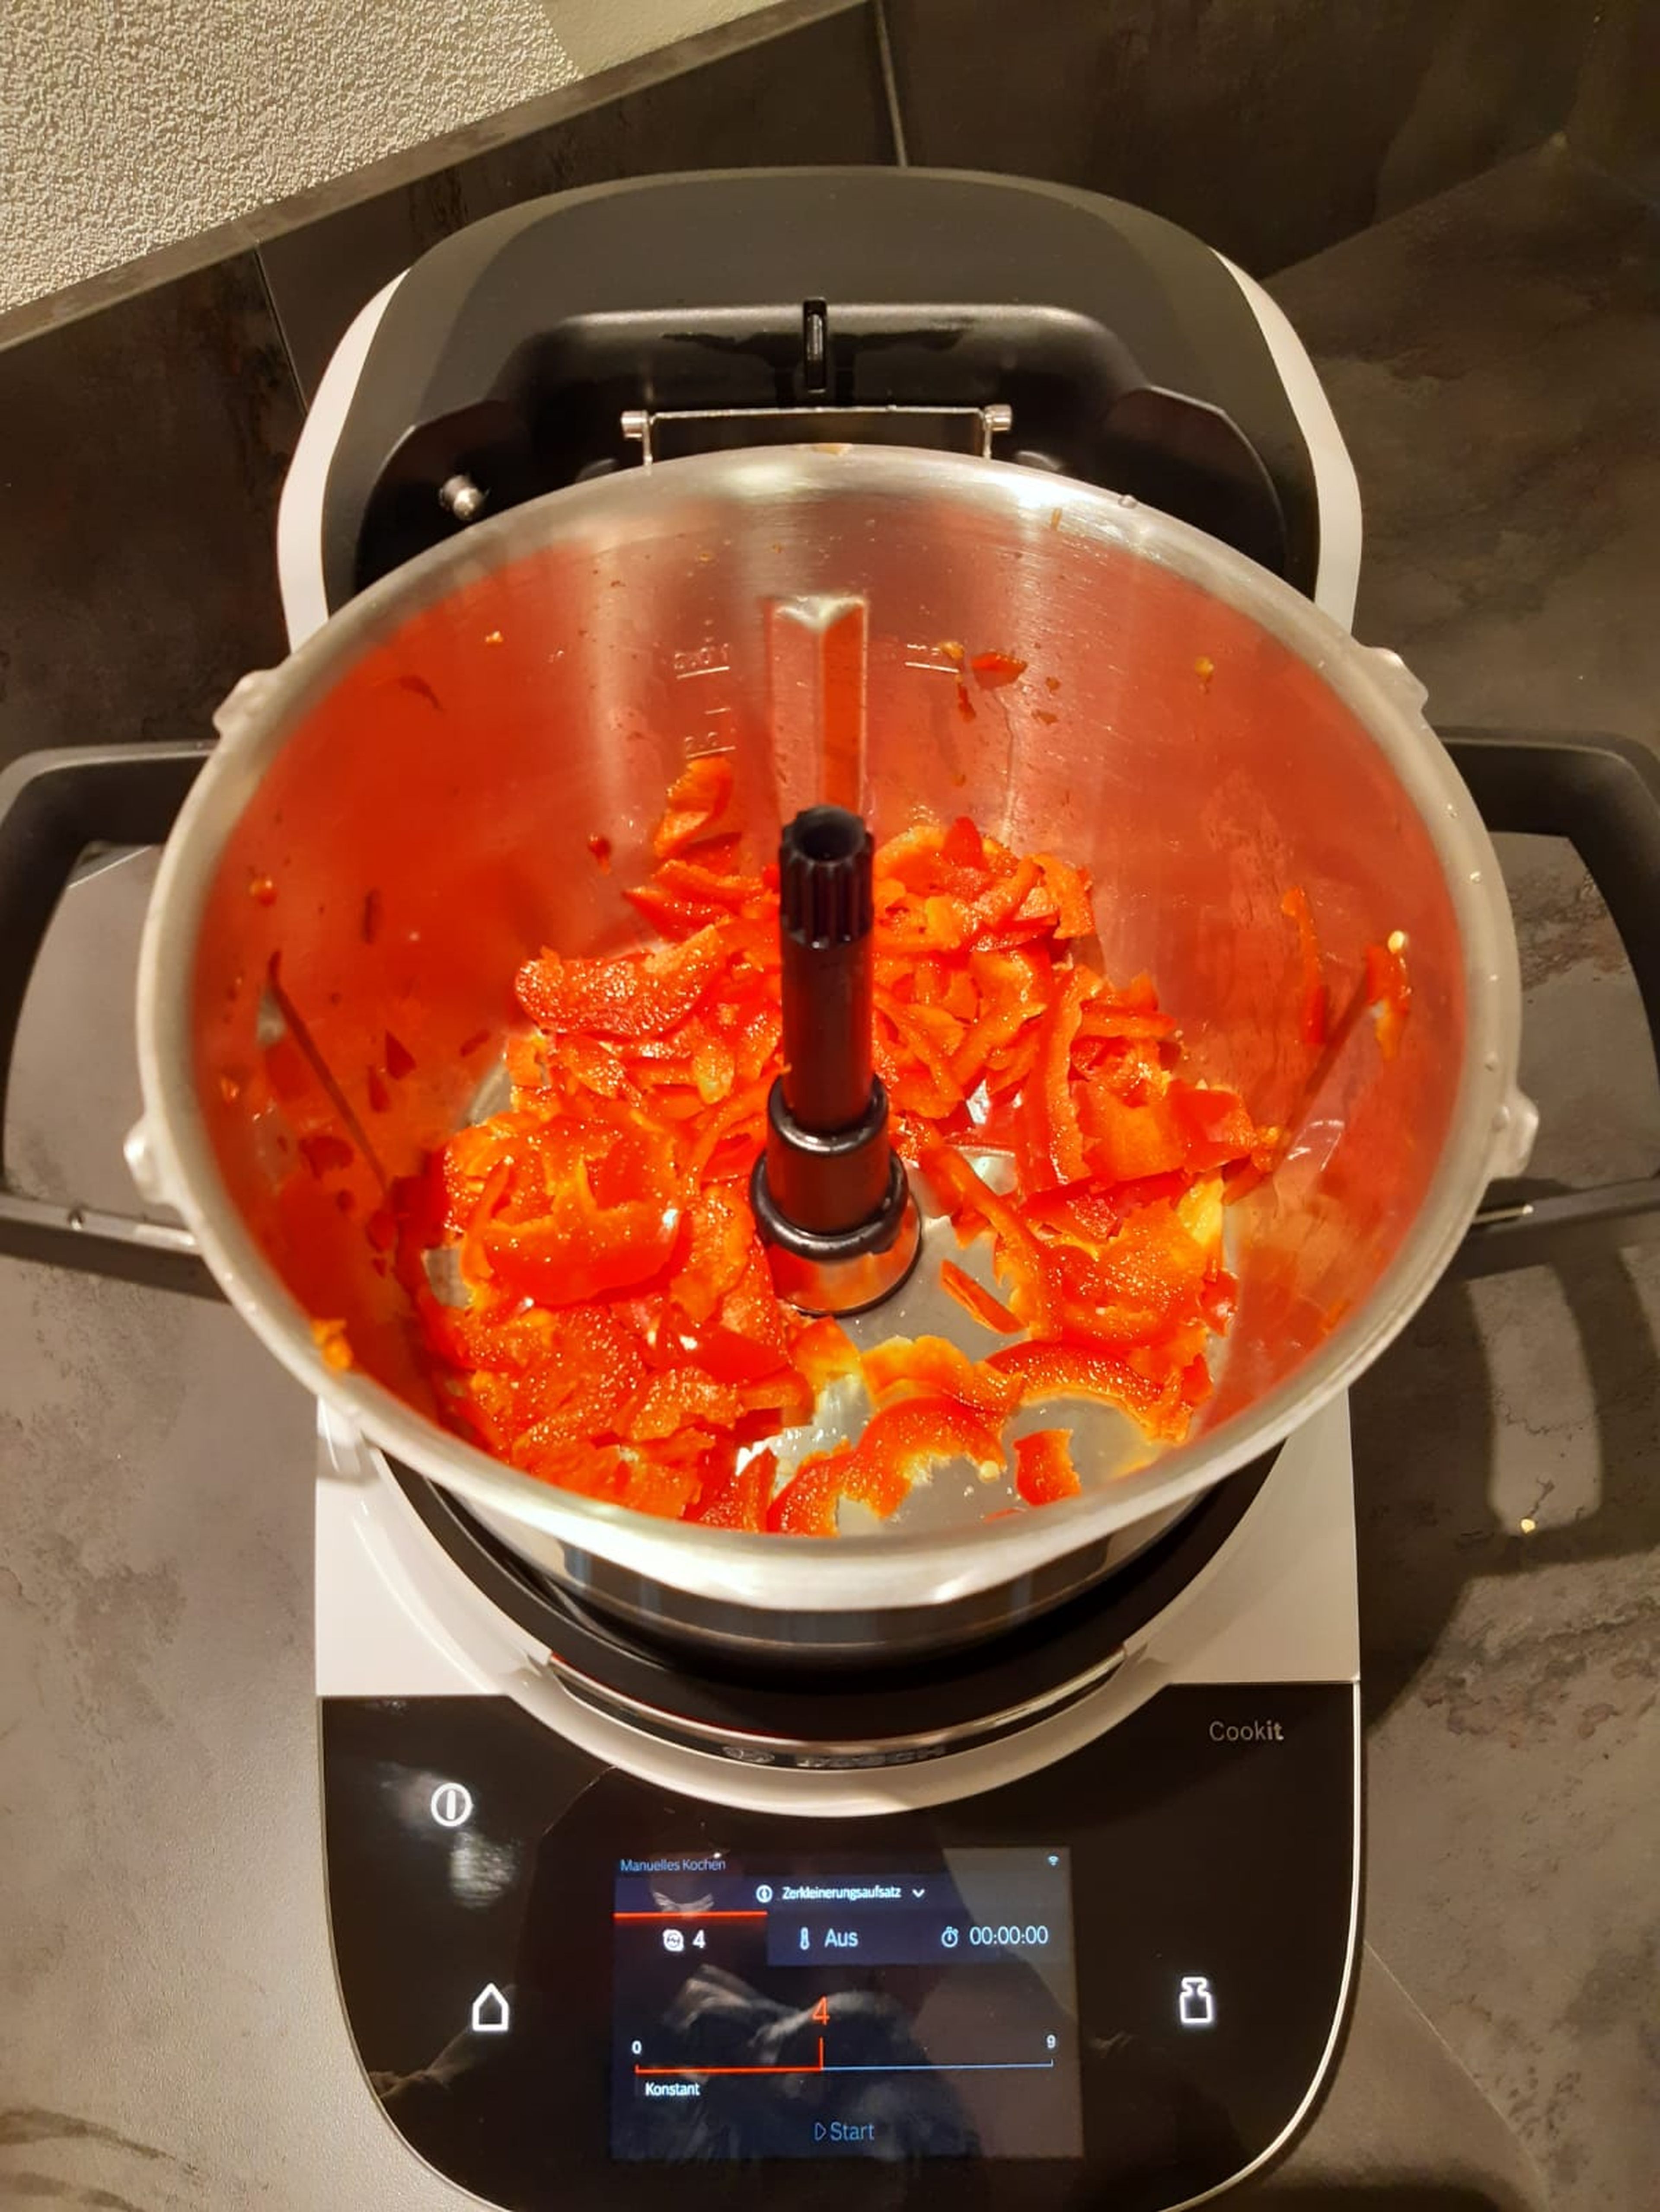 Paprika mit der groben Cookit Wendeschneidscheibe (Wendeschneidescheibe| Stufe 4 | 30 Sek.) schneiden und ebenfalls umfüllen.